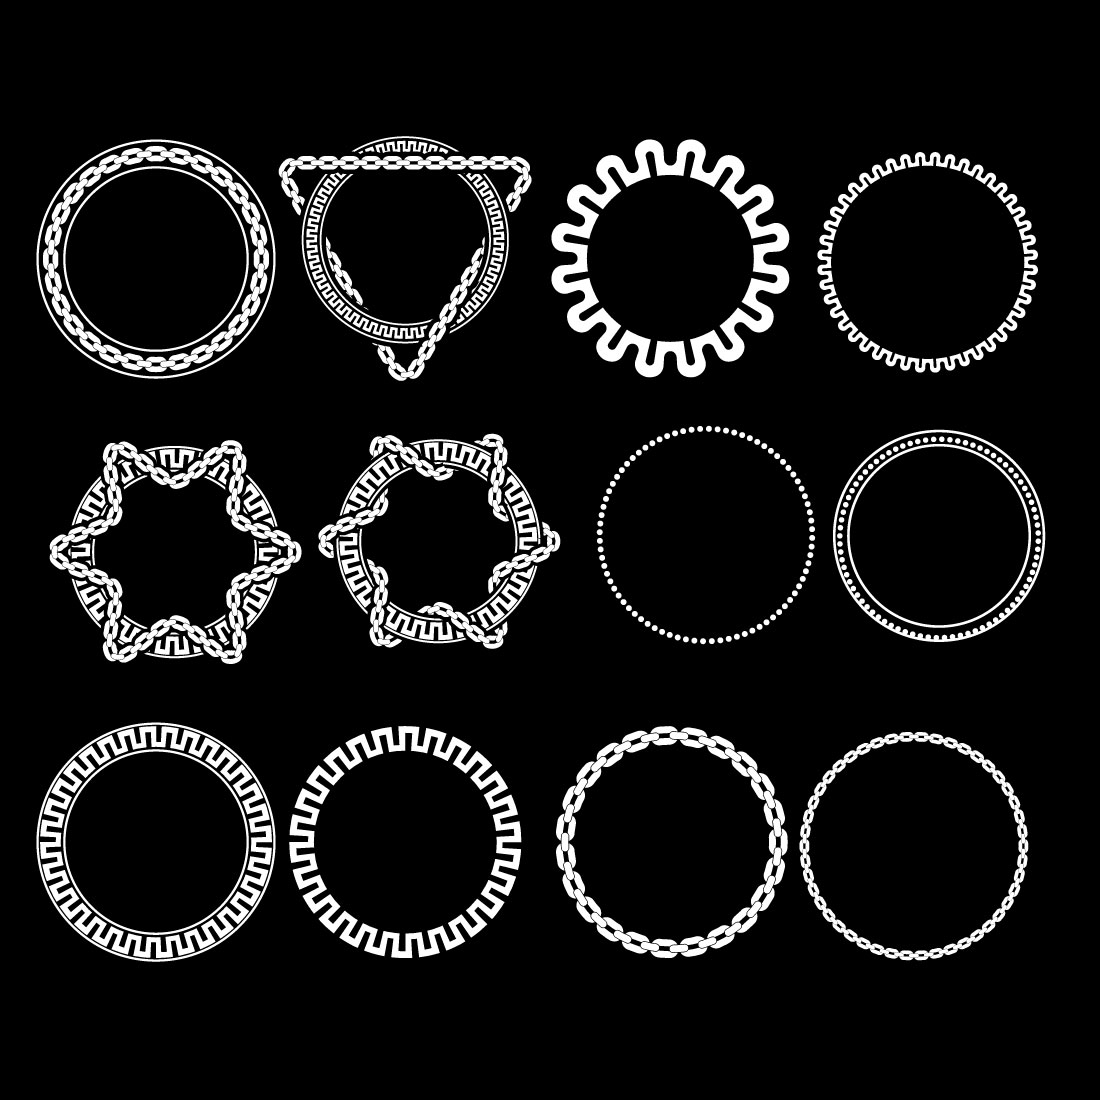 Chains Set – Icons, Parts, & Circles bundle cover image.